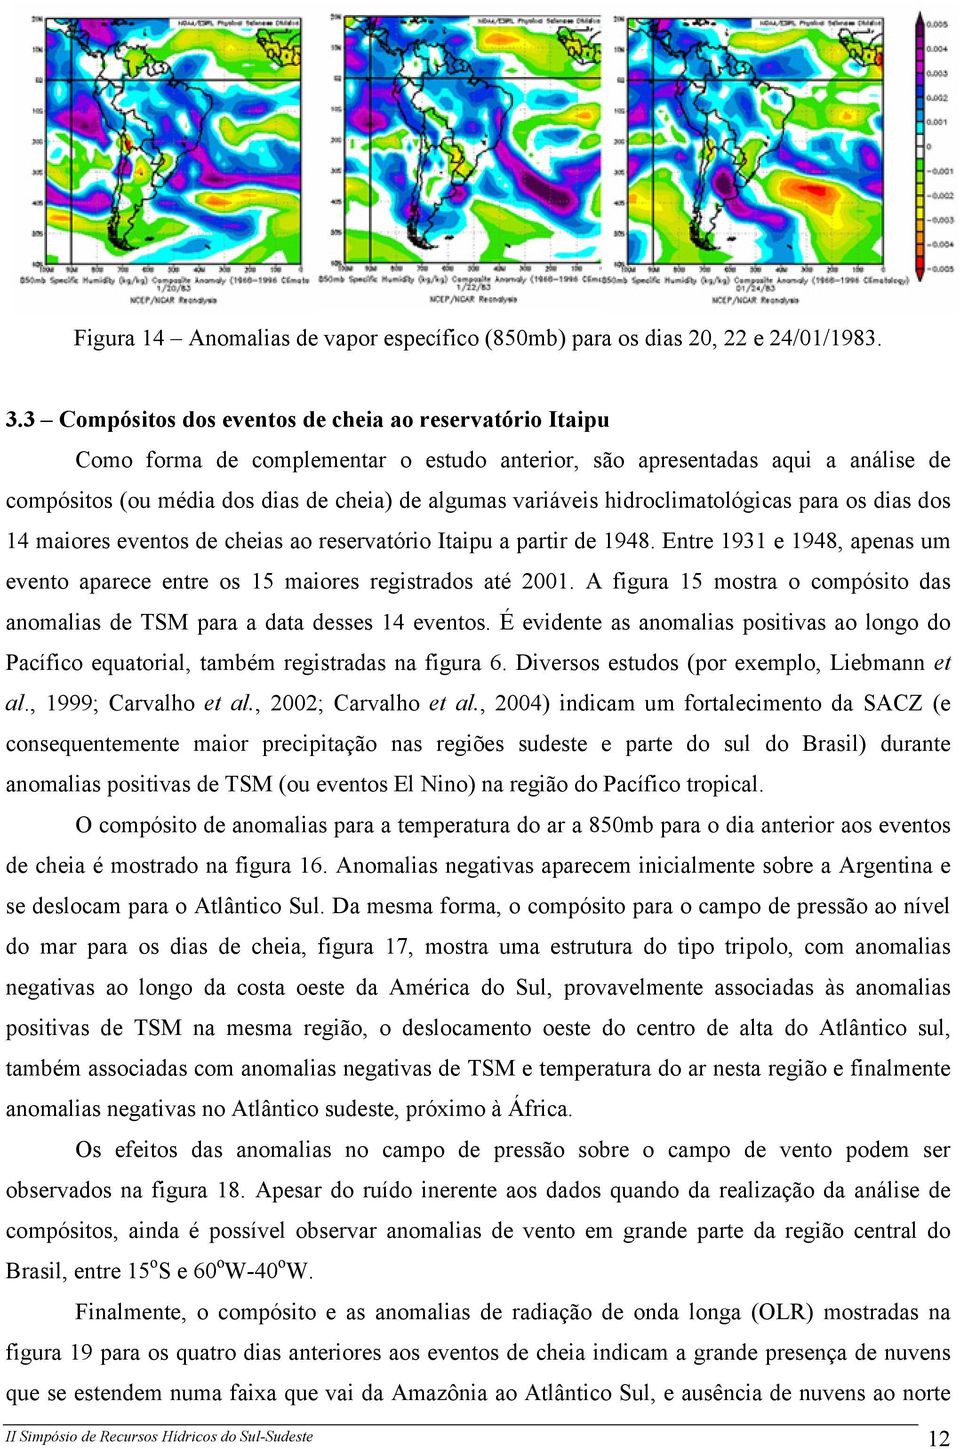 hidroclimatológicas para os dias dos 14 maiores eventos de cheias ao reservatório Itaipu a partir de 1948. Entre 1931 e 1948, apenas um evento aparece entre os 15 maiores registrados até 2001.